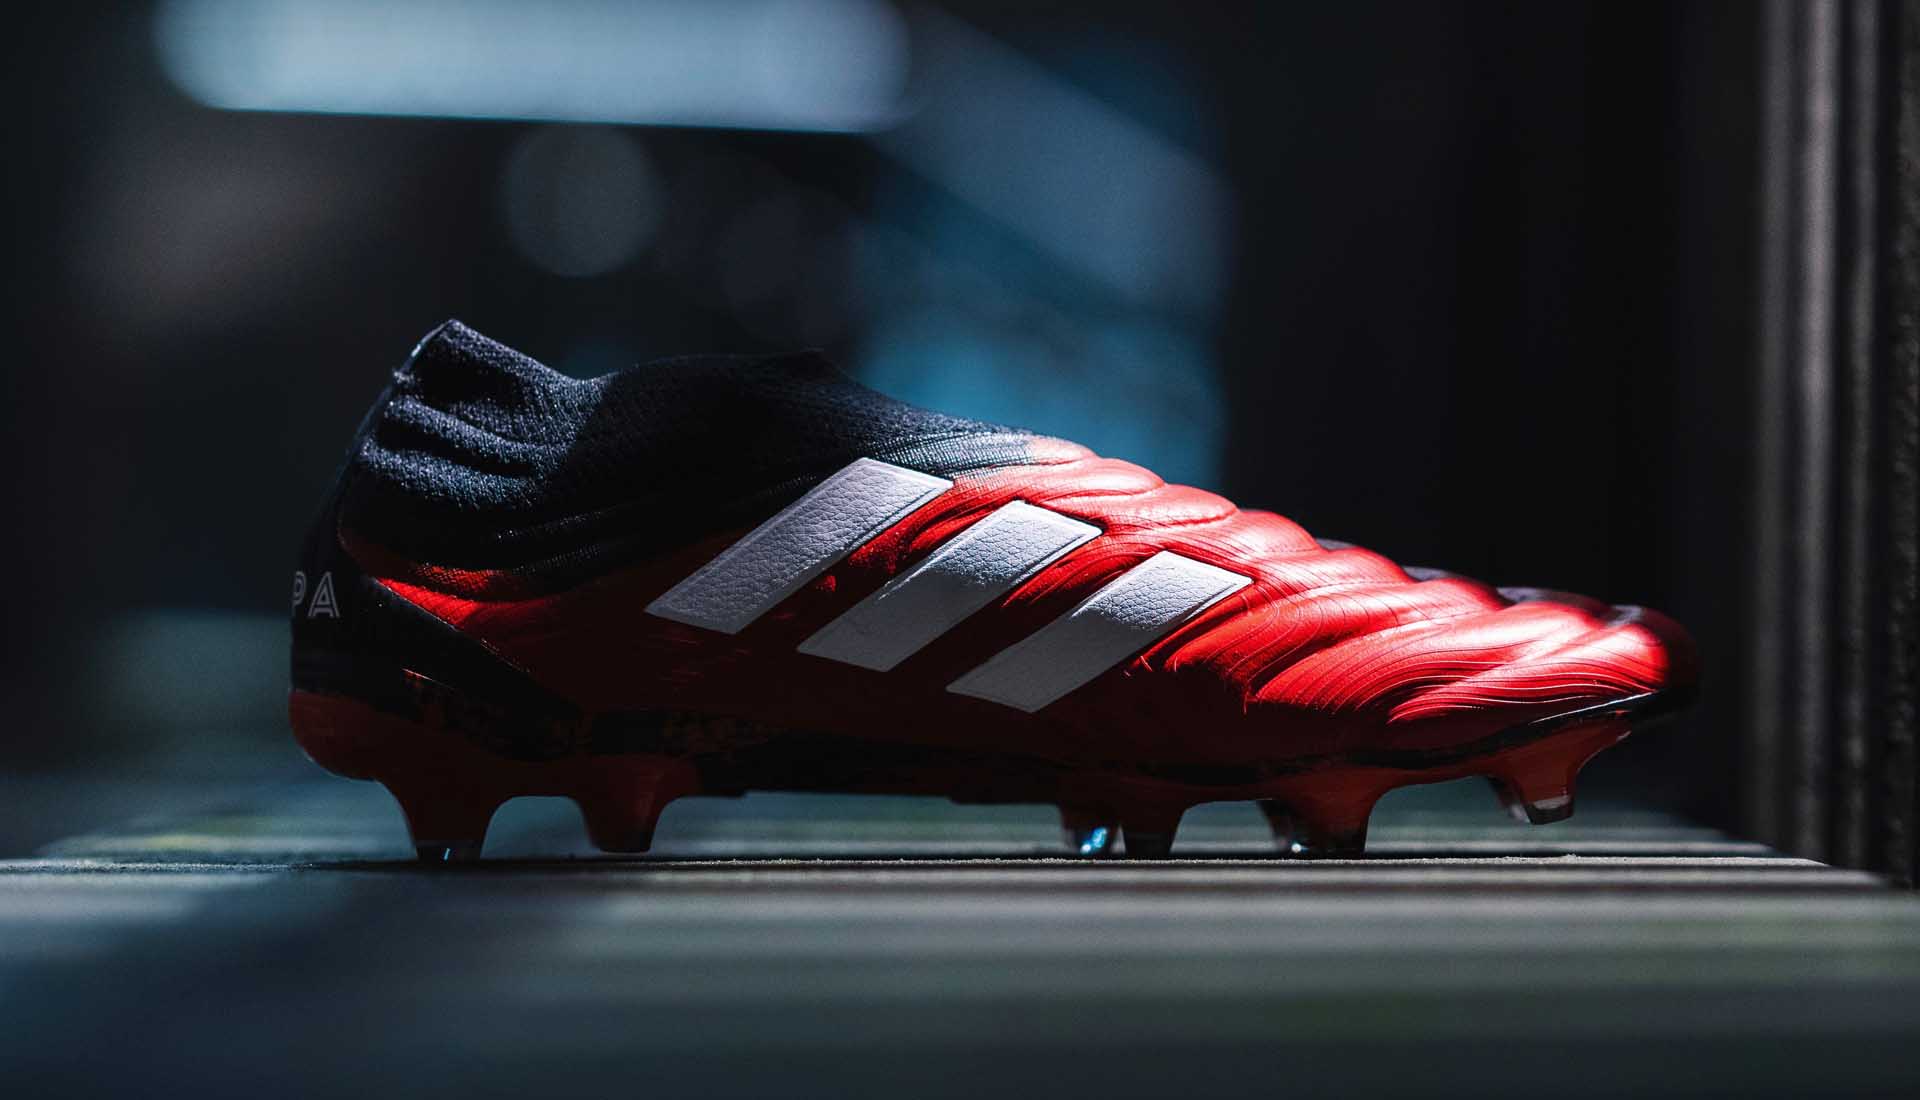 Mẫu giày đá bóng Adidas Copa 19+ không dây được các tiền đạo cắm lựa chọn